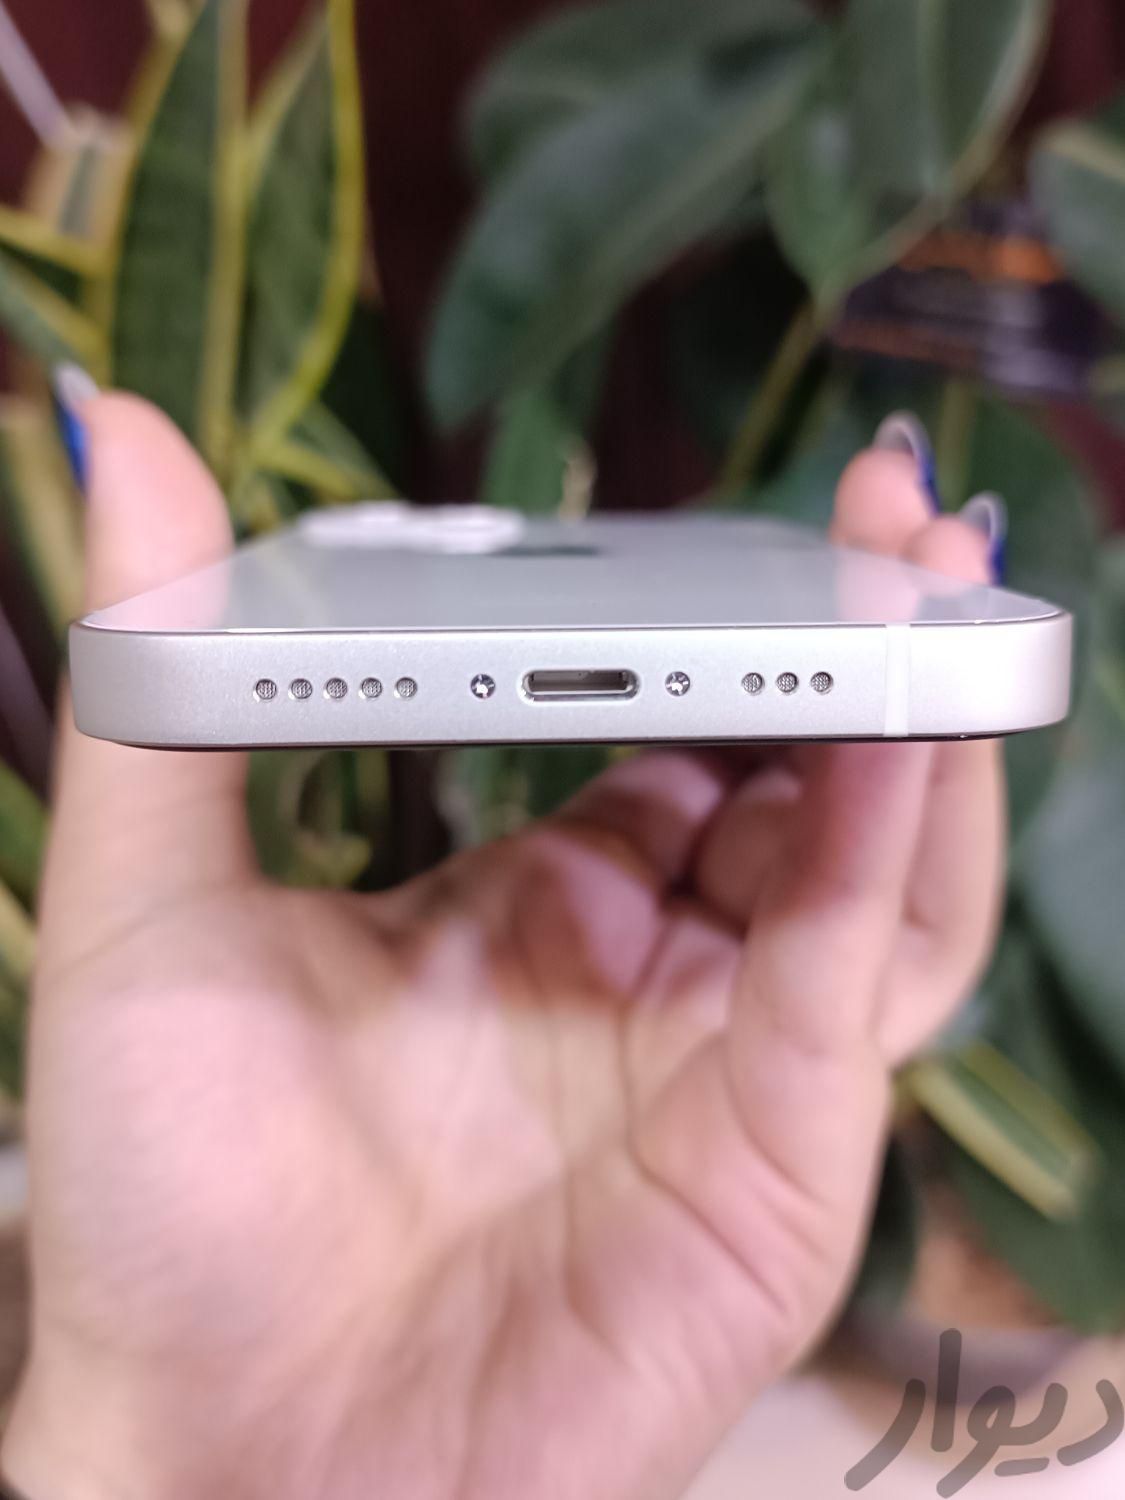 اپل iPhone 13 سفید با حافظهٔ ۱۲۸ گیگابایت|موبایل|بم, |دیوار